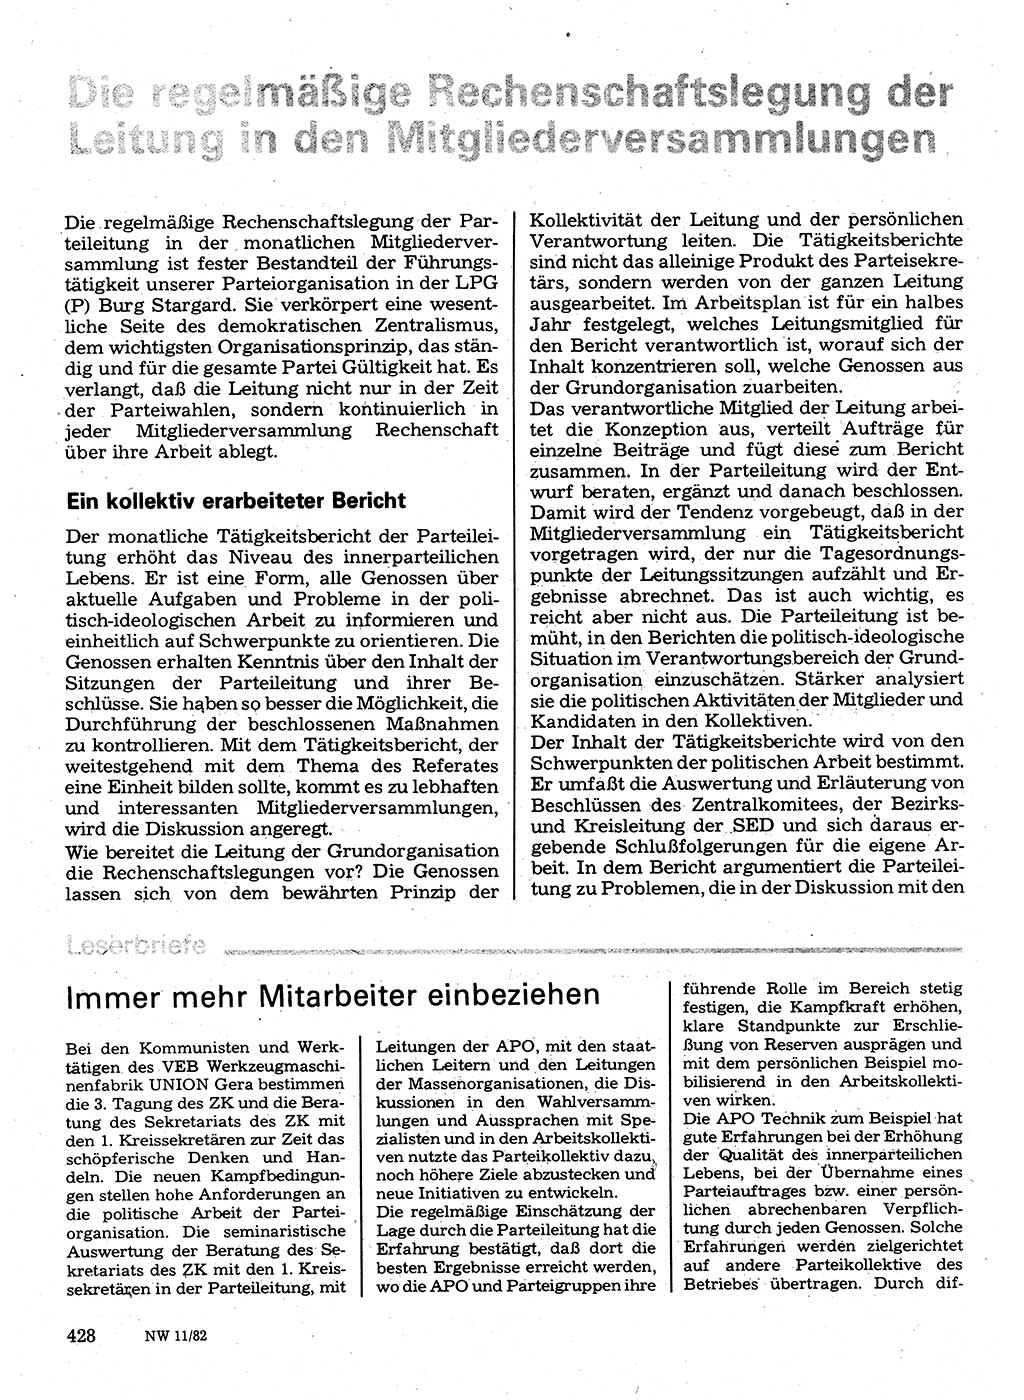 Neuer Weg (NW), Organ des Zentralkomitees (ZK) der SED (Sozialistische Einheitspartei Deutschlands) für Fragen des Parteilebens, 37. Jahrgang [Deutsche Demokratische Republik (DDR)] 1982, Seite 428 (NW ZK SED DDR 1982, S. 428)